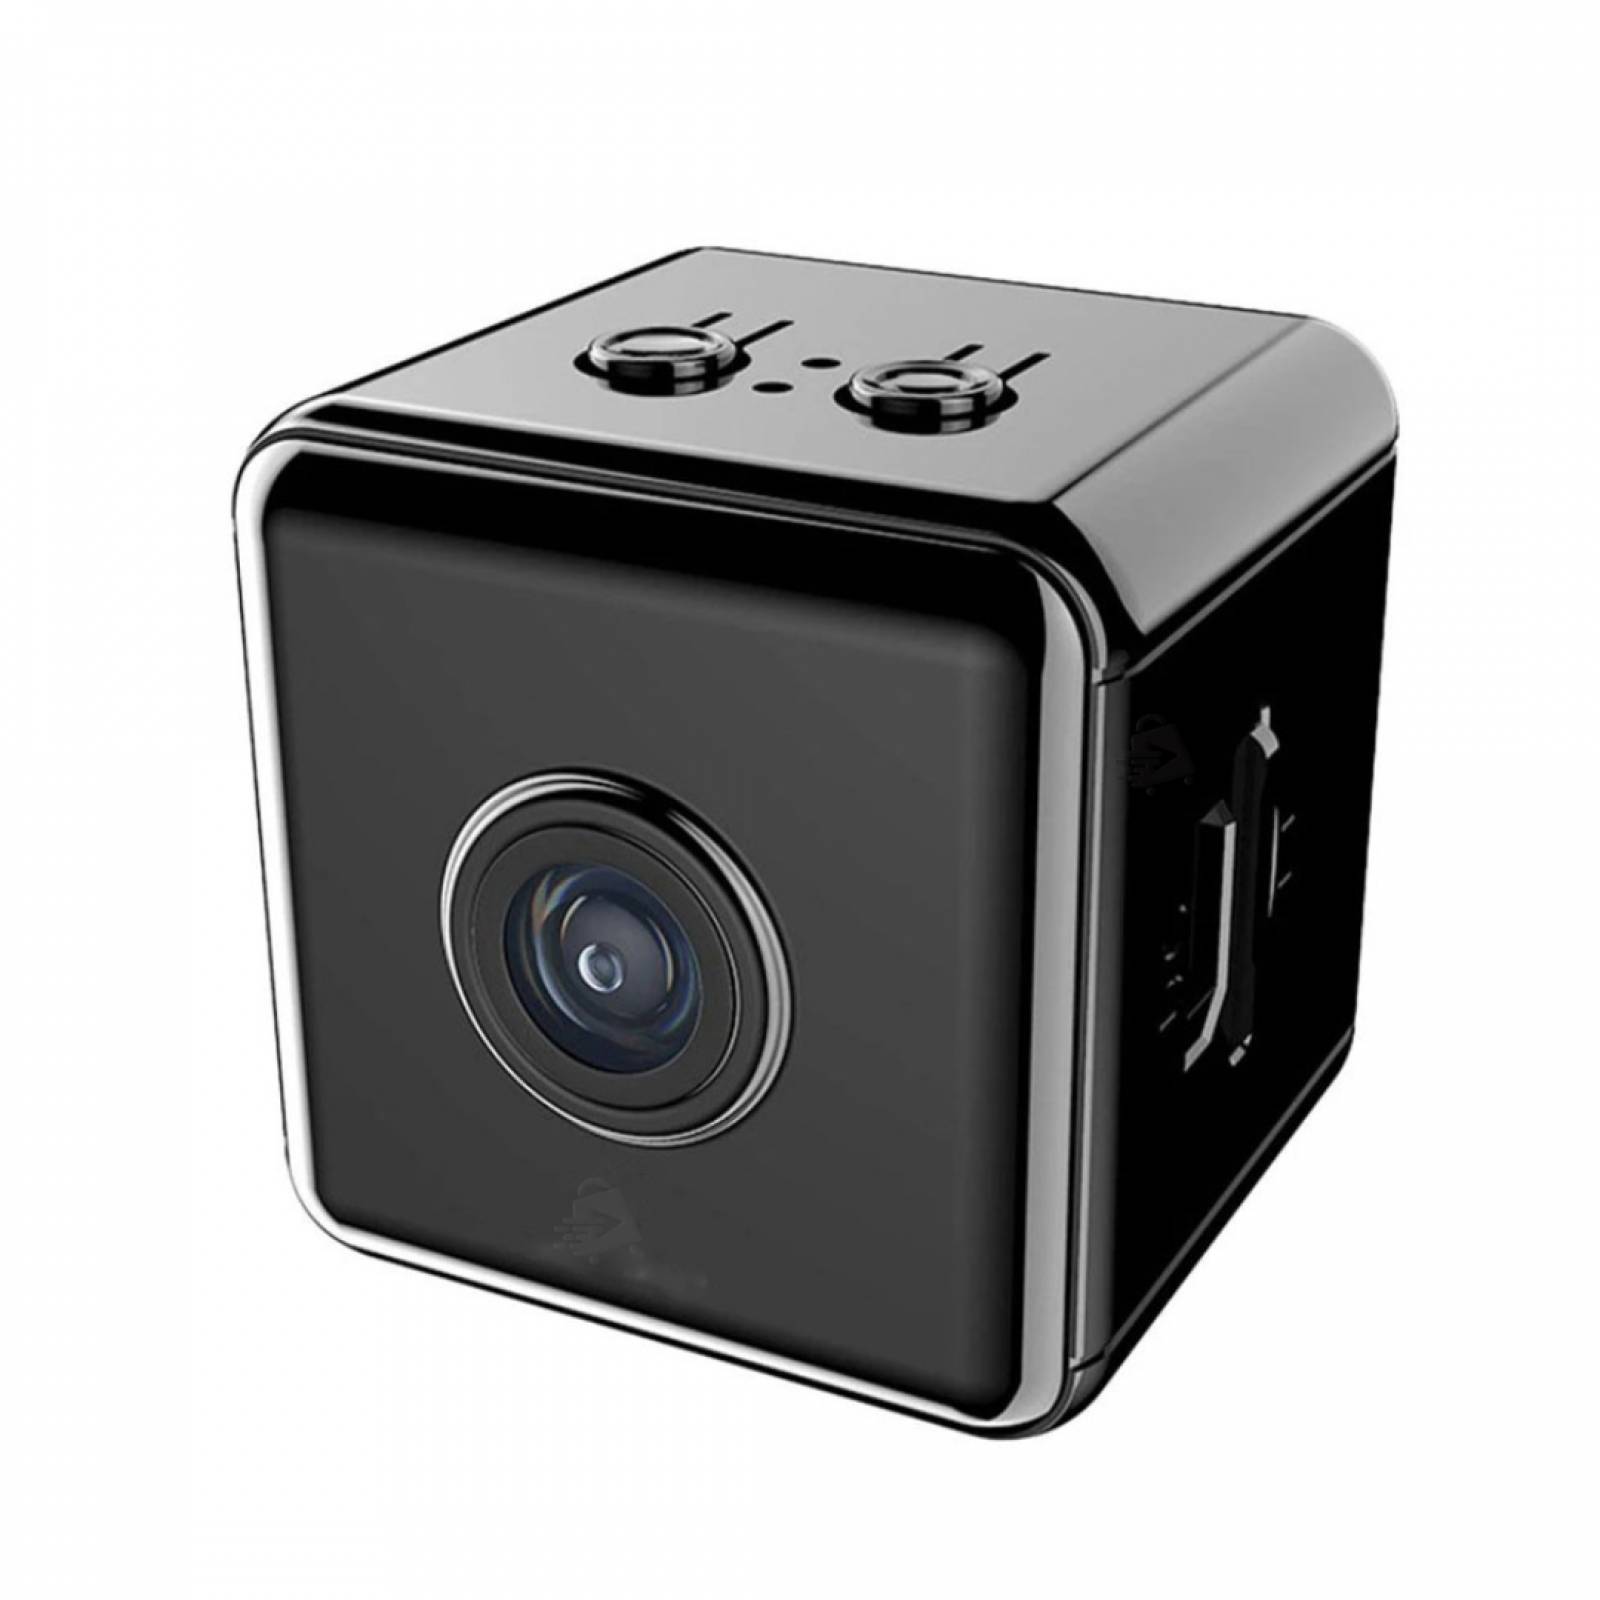 Comprar micro cámara espía full hd con batería barata online